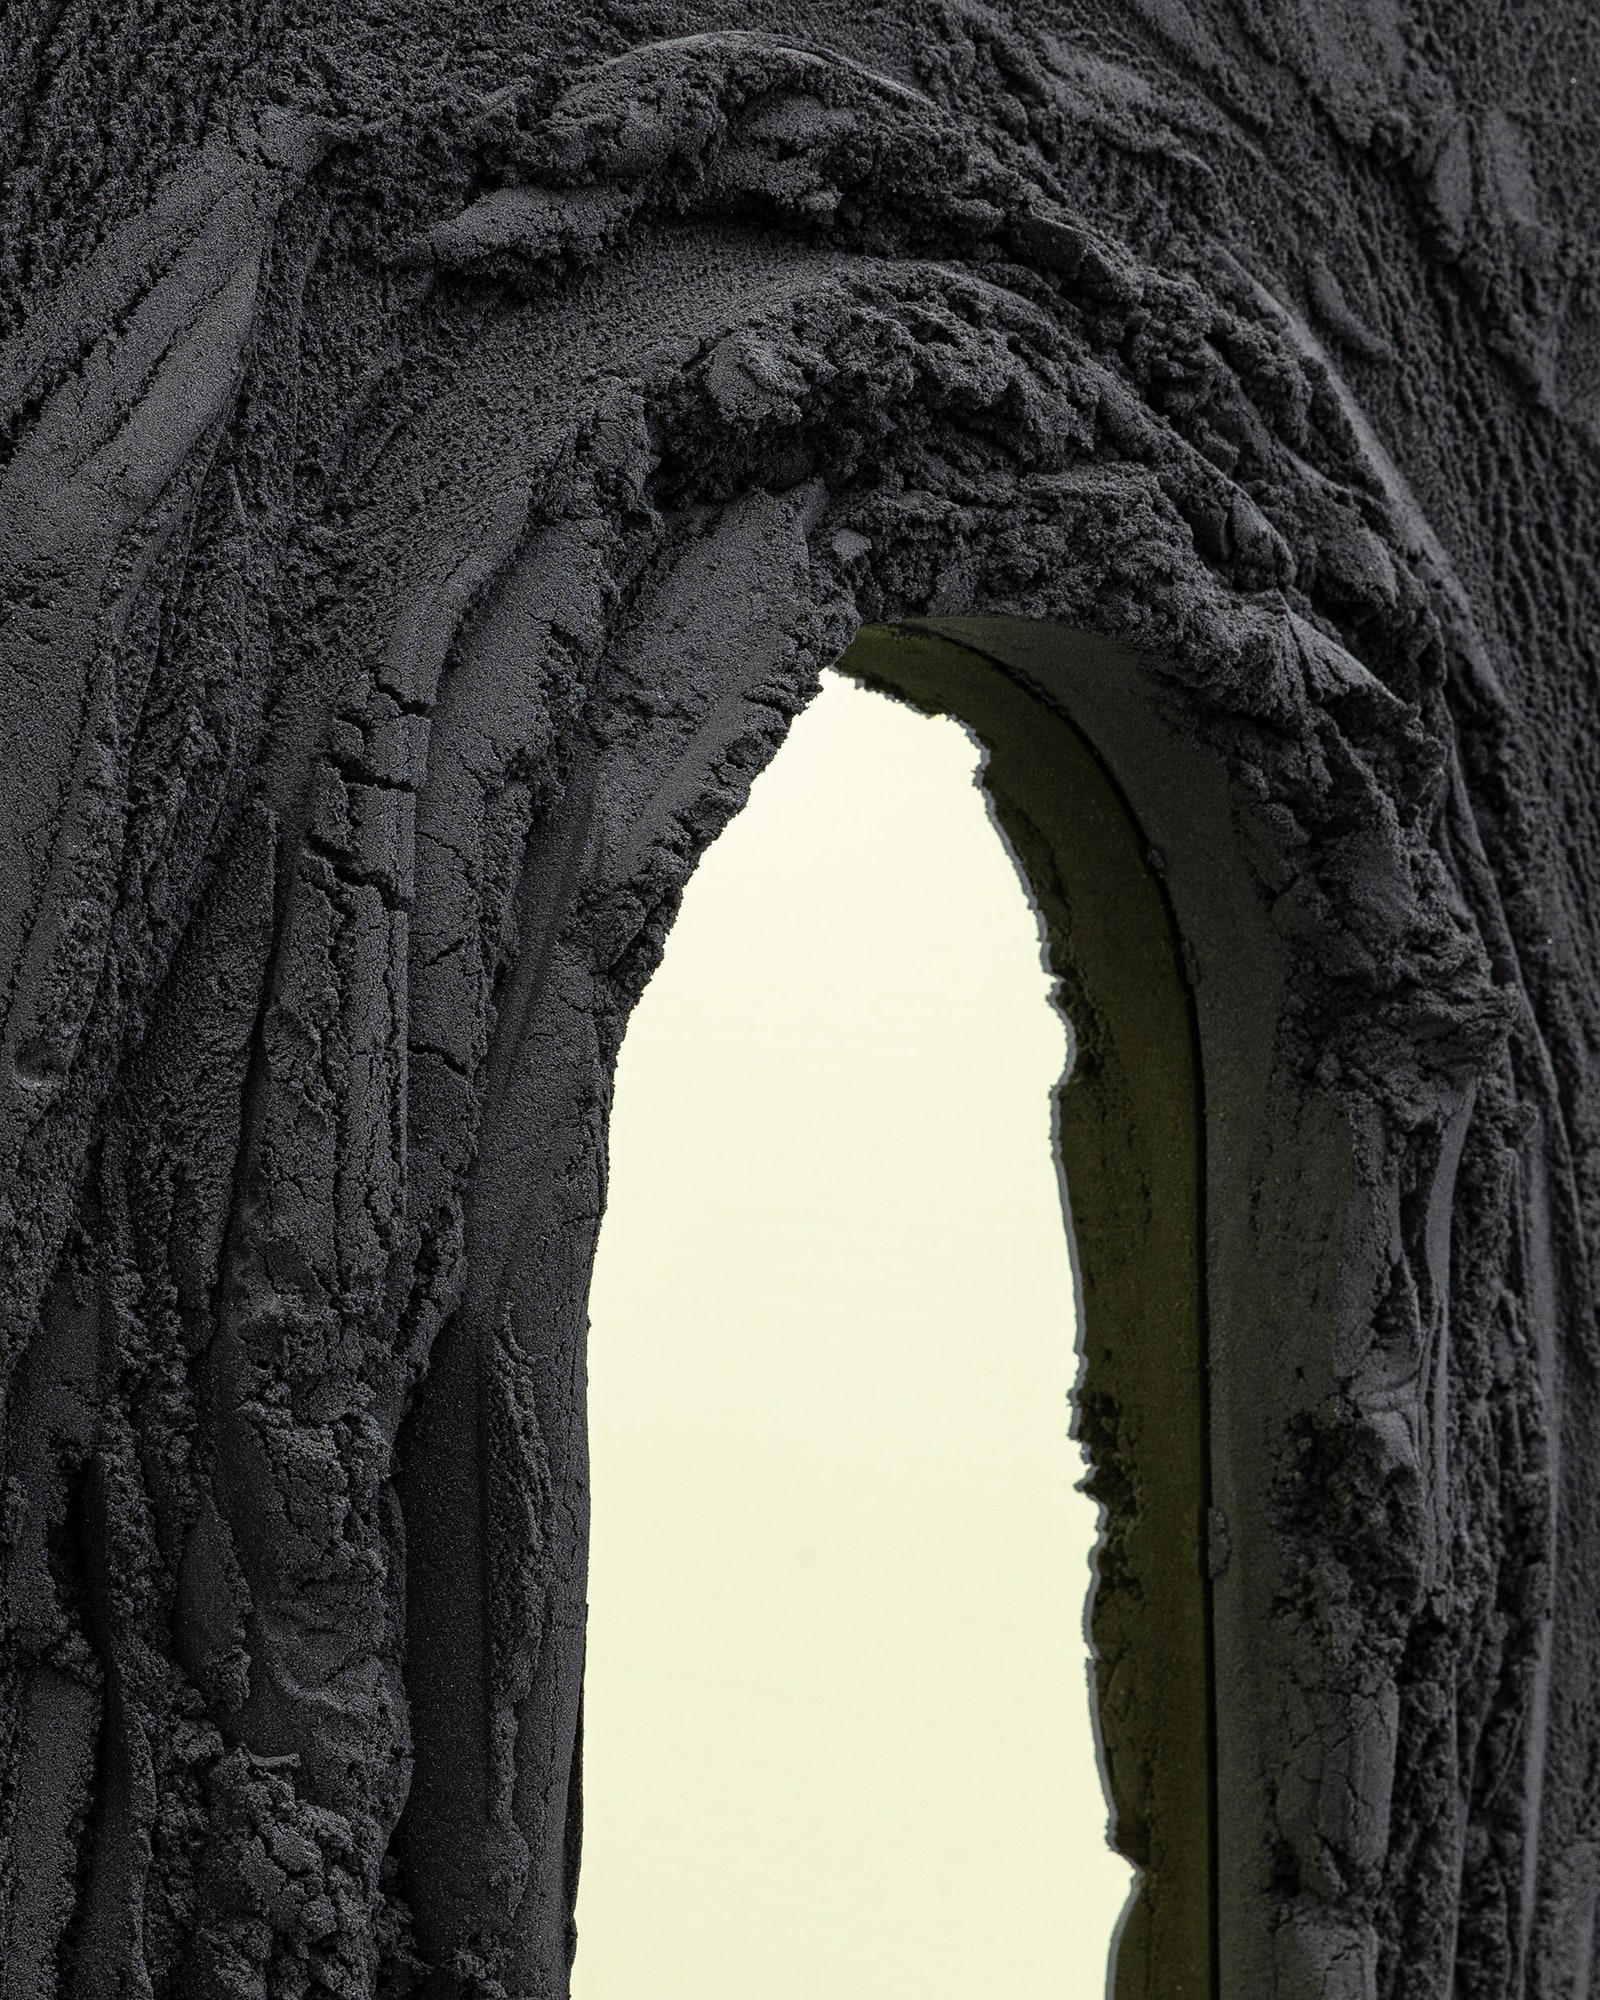 Зеркала в вулканических рамах от Фернандо Мастранджело